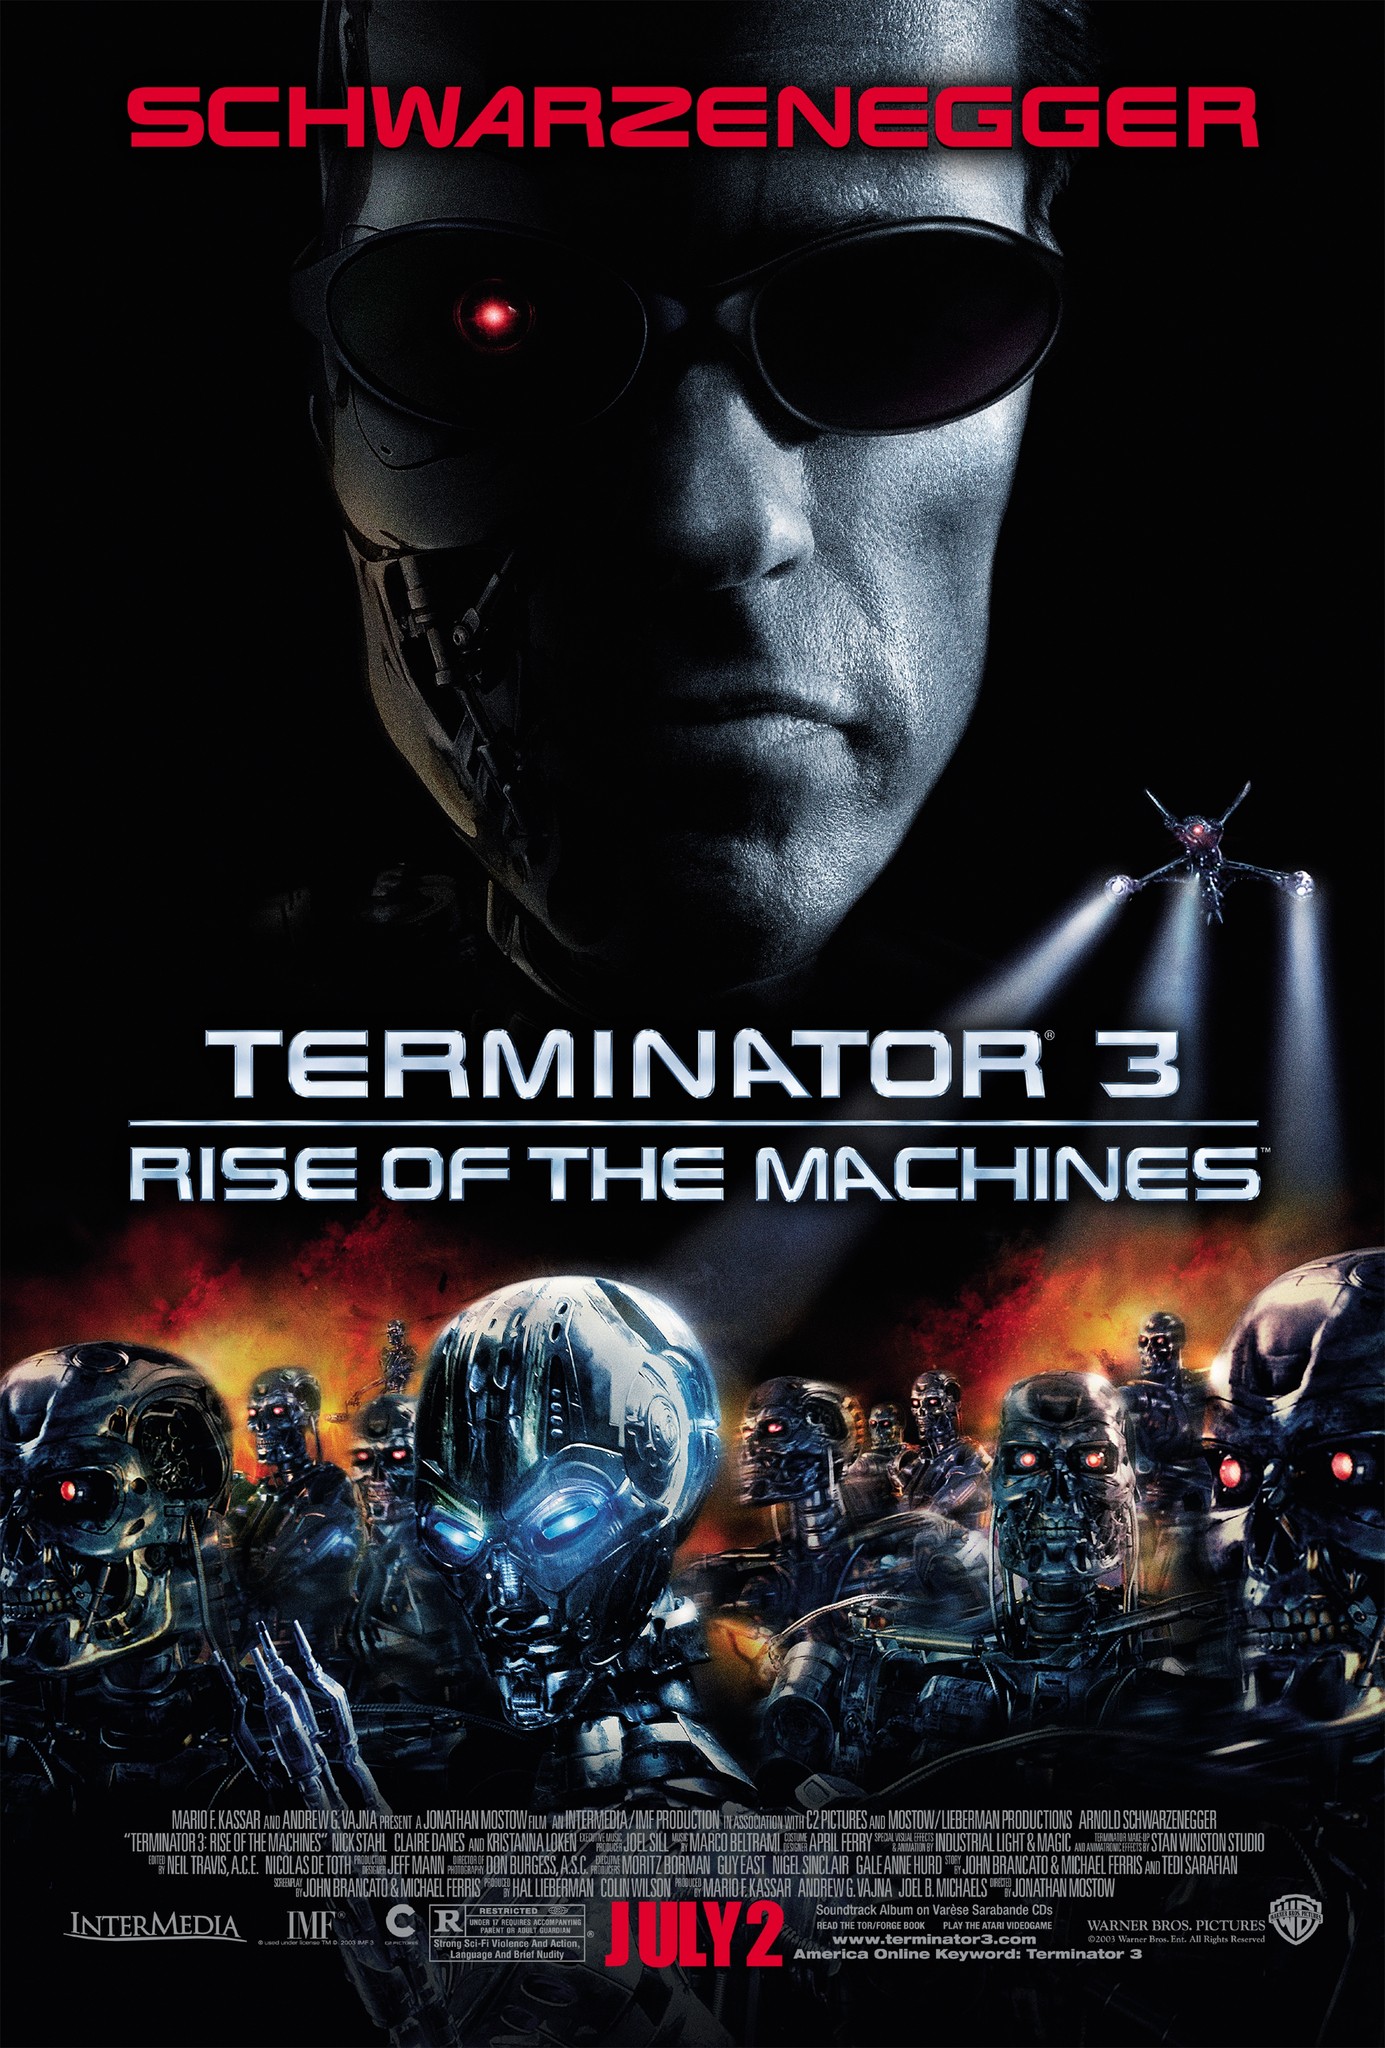 Kẻ Hủy Diệt 3: Người Máy Nổi Loạn - Terminator 3: Rise of the Machines (2003)